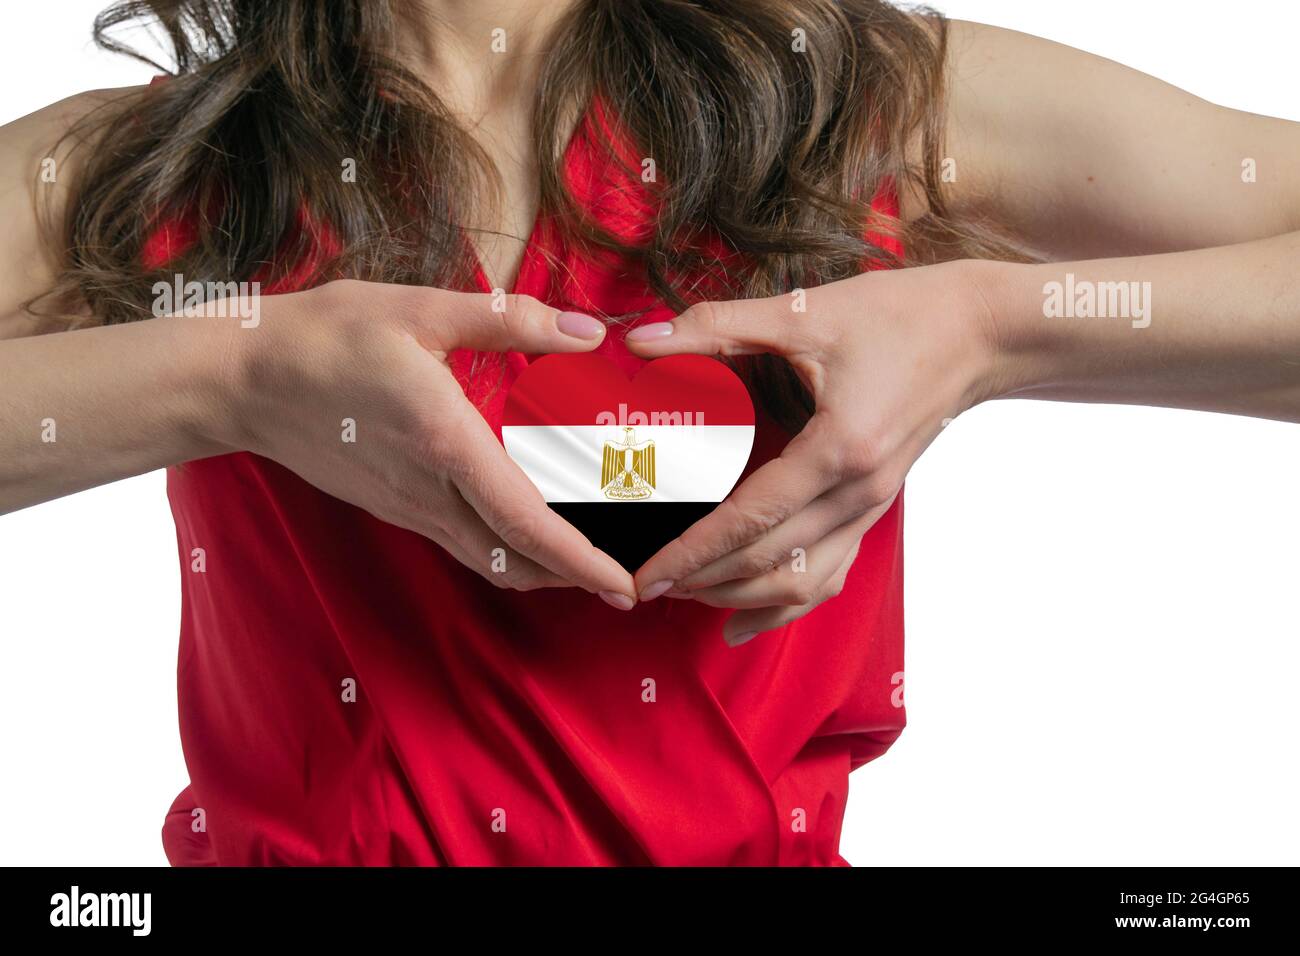 Liebe Ägypten die Frau hält ein Herz in Form der Flagge Ägyptens auf ihrer Brust. Konzept des Patriotismus. Stockfoto